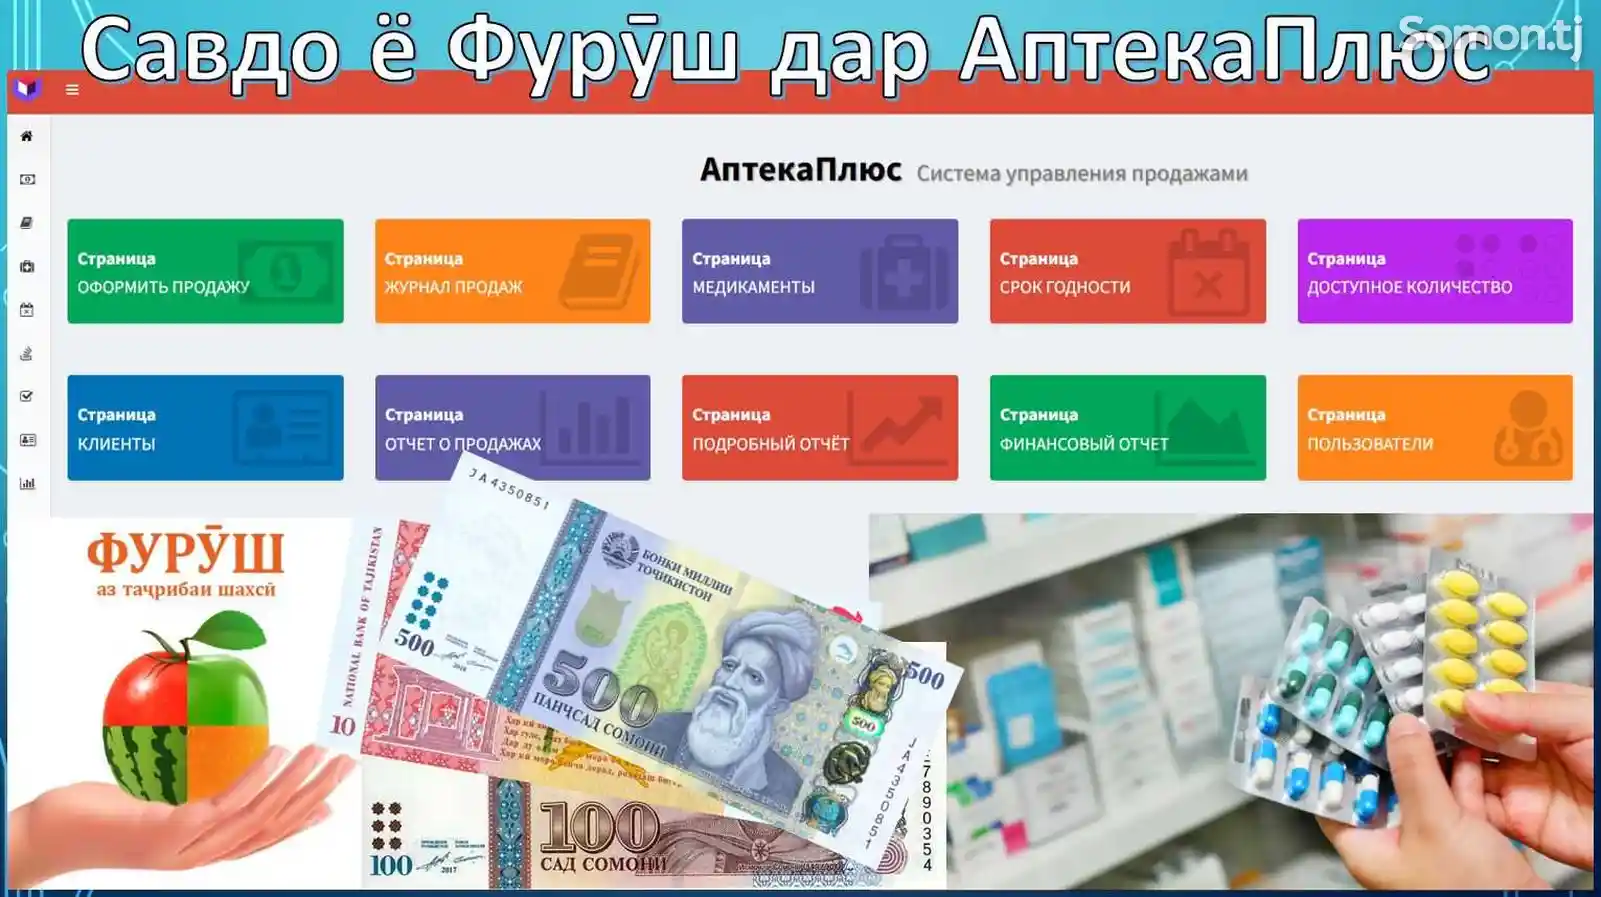 Система управления аптекой АптекаПлюс-2